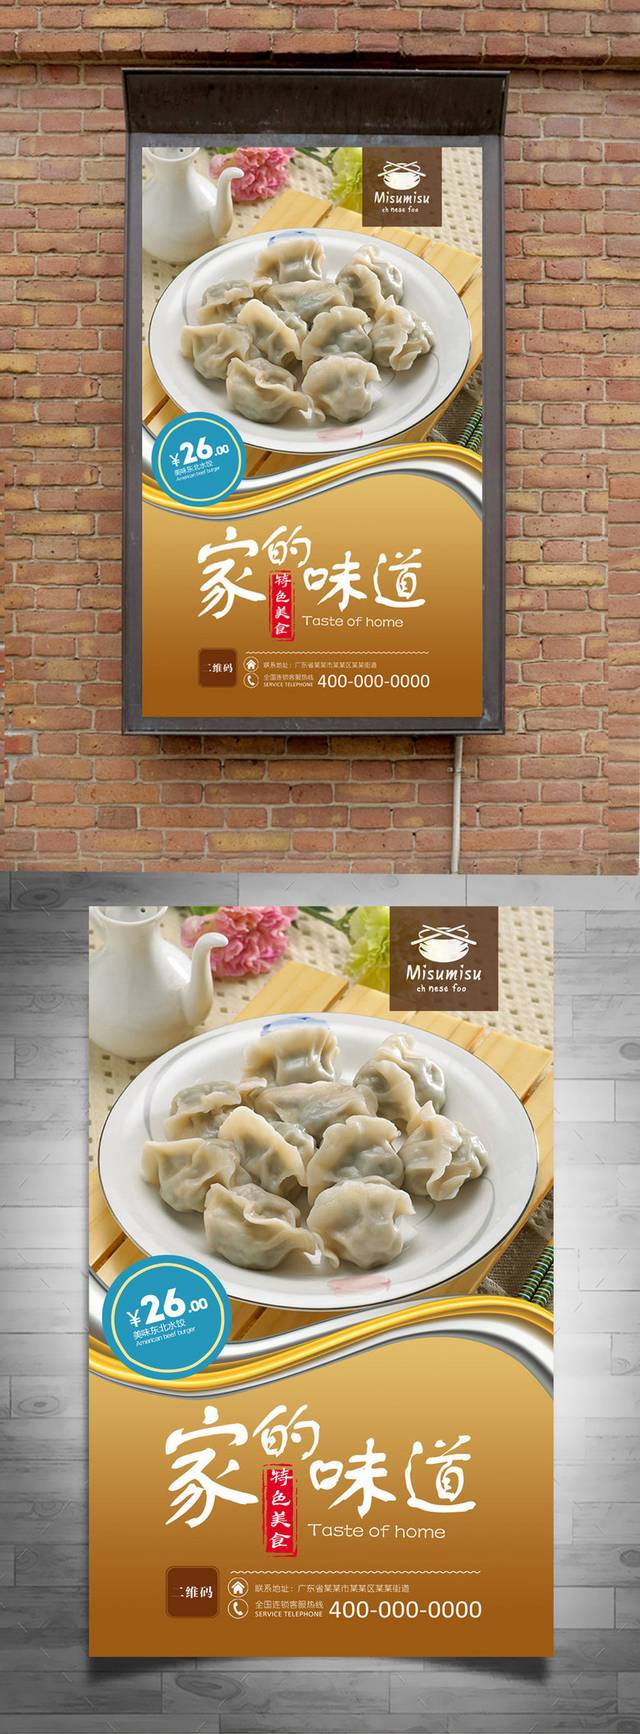 精美东北水饺海报宣传设计